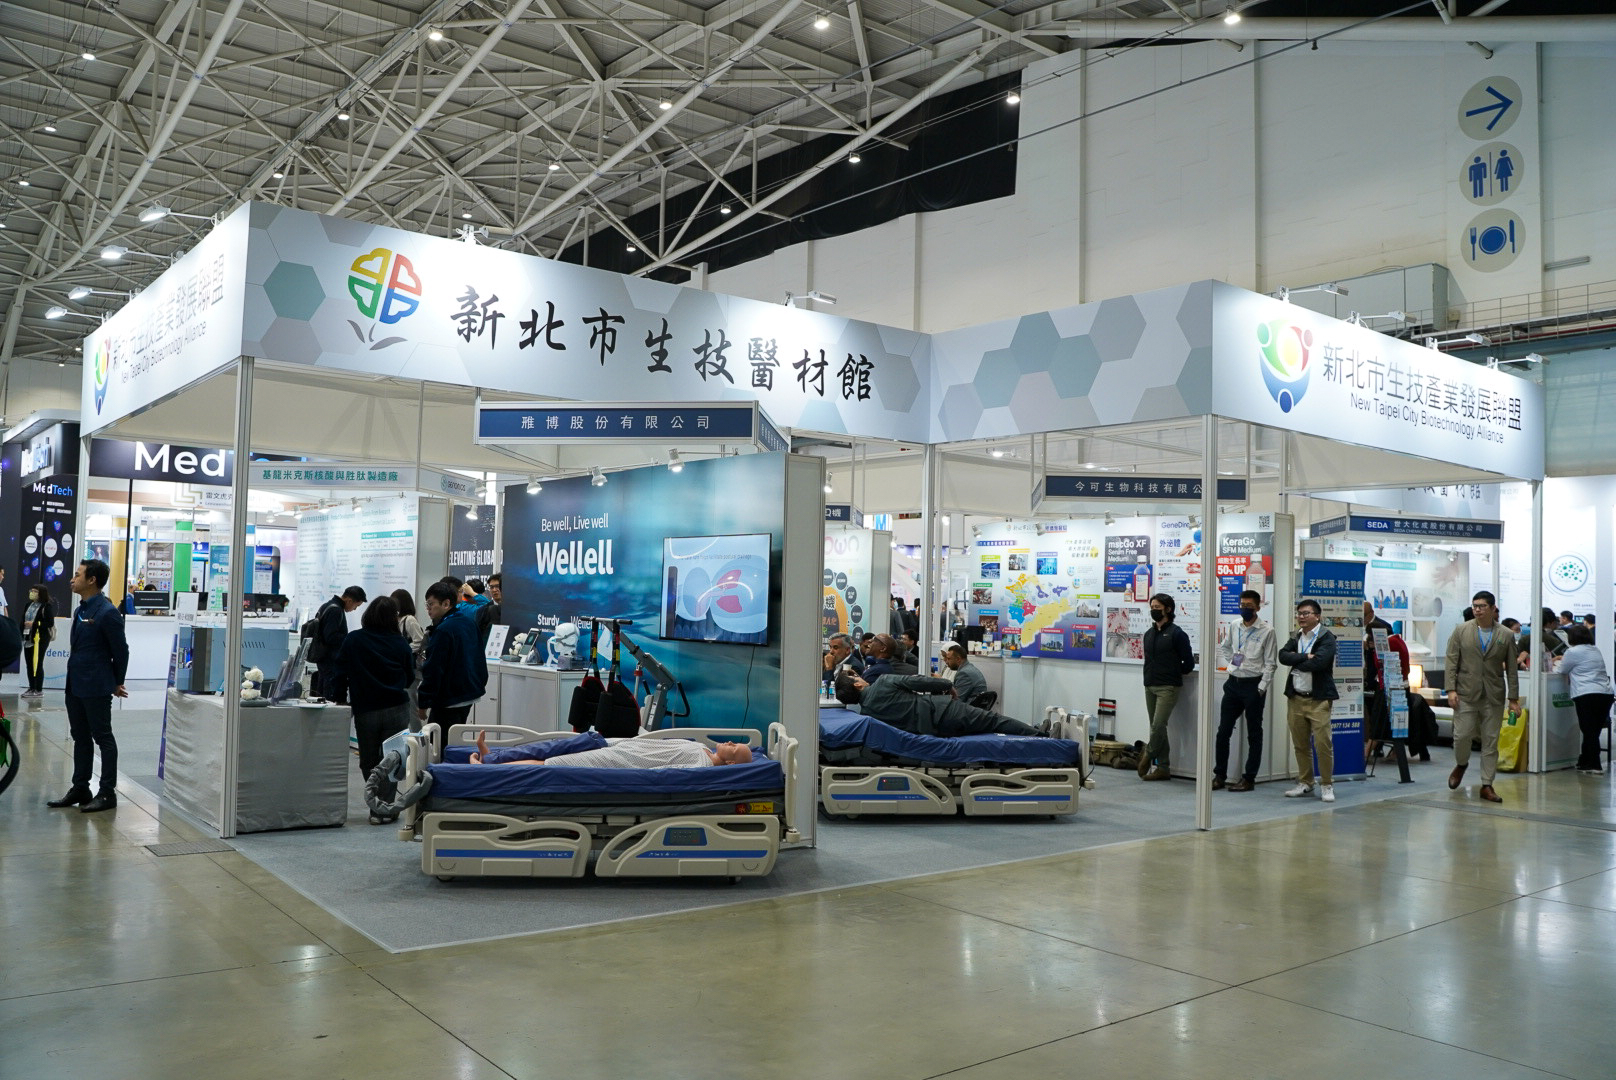 新北市政府攜手14家生技醫療業者，於台灣醫療科技展設立「新北市生技醫材館」(活動展期11月30日至12月3日) 。